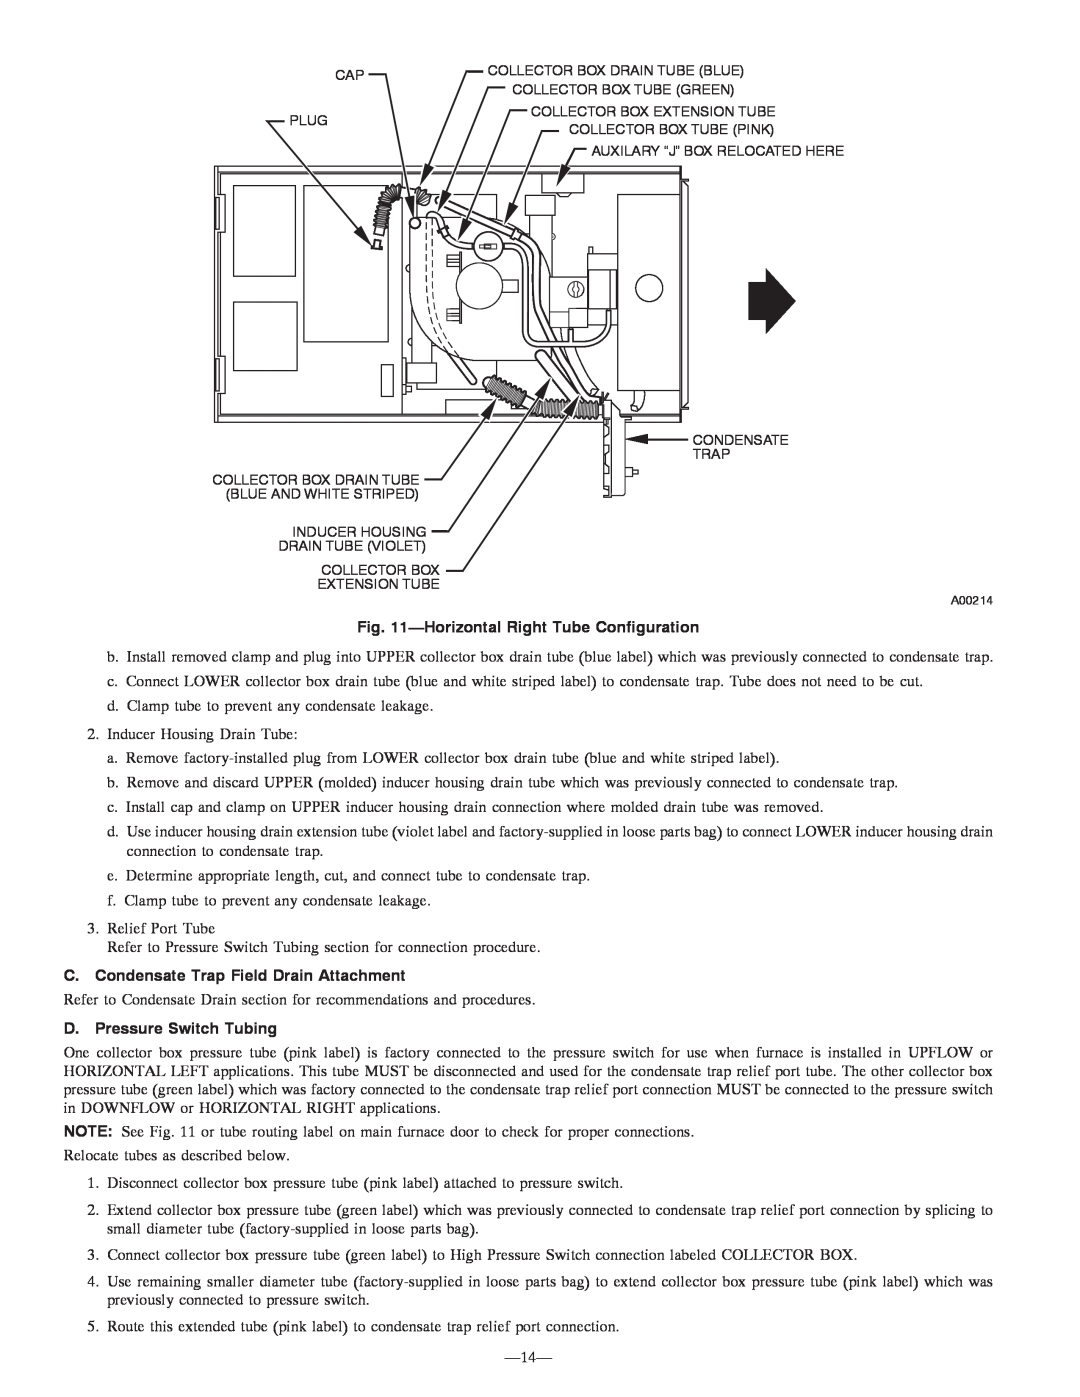 Bryant 355MAV HorizontalRight Tube Configuration, C. Condensate Trap Field Drain Attachment, D. Pressure Switch Tubing 